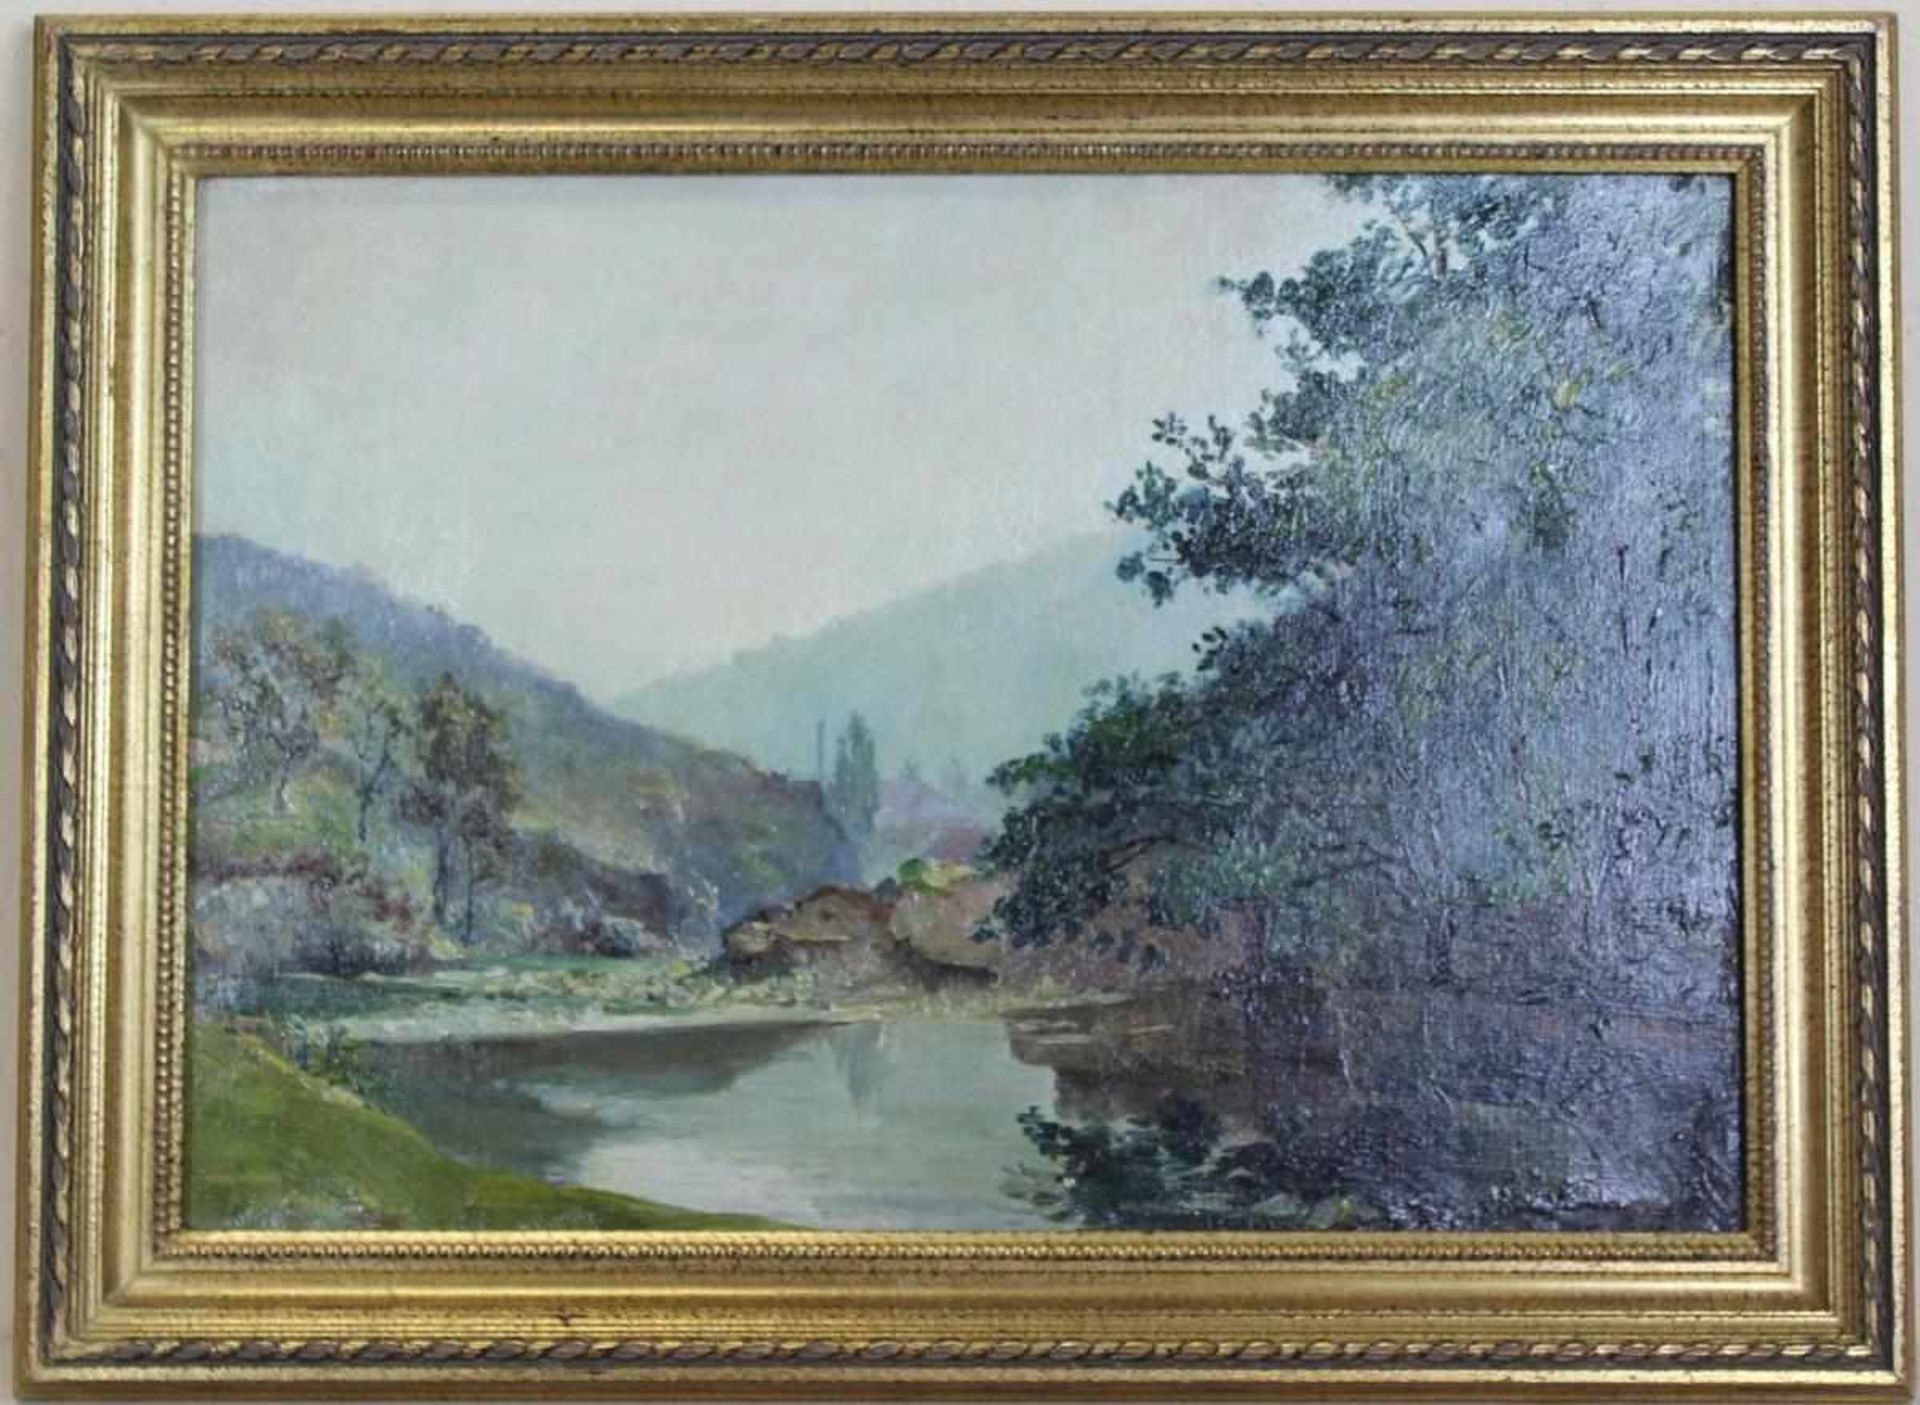 Émile Bernard: Ölgemälde Flusslandschaft Frankreich um 1900, Öl auf Leinwand, Holzrahmen, ca. 32 x